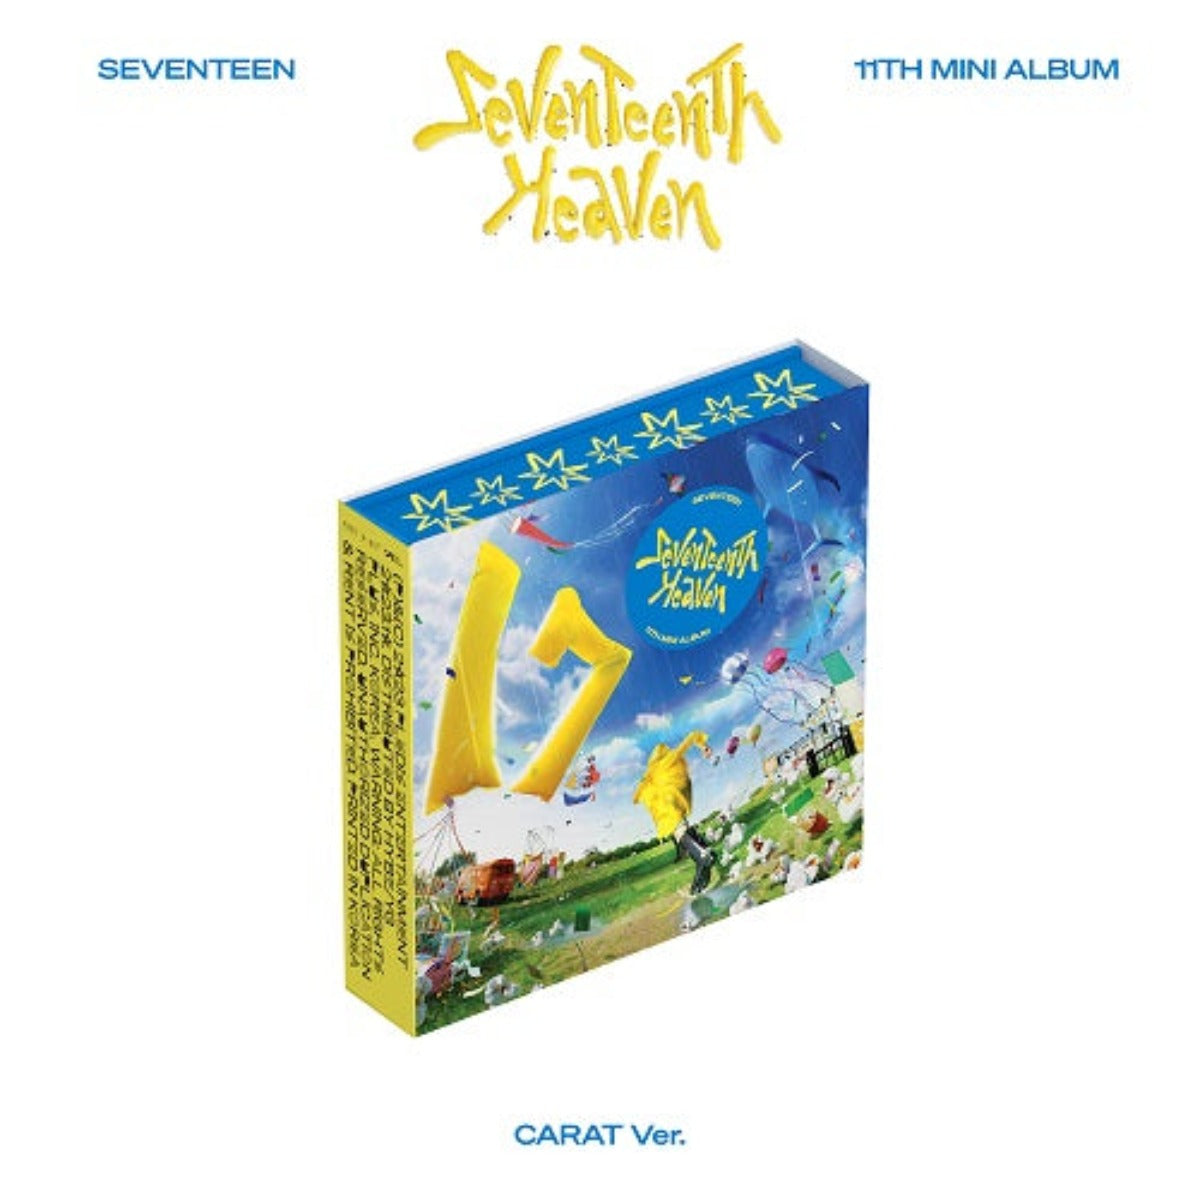 SEVENTEEN Mini Album Vol. 11 - Seventeenth Heaven (CARAT Version)